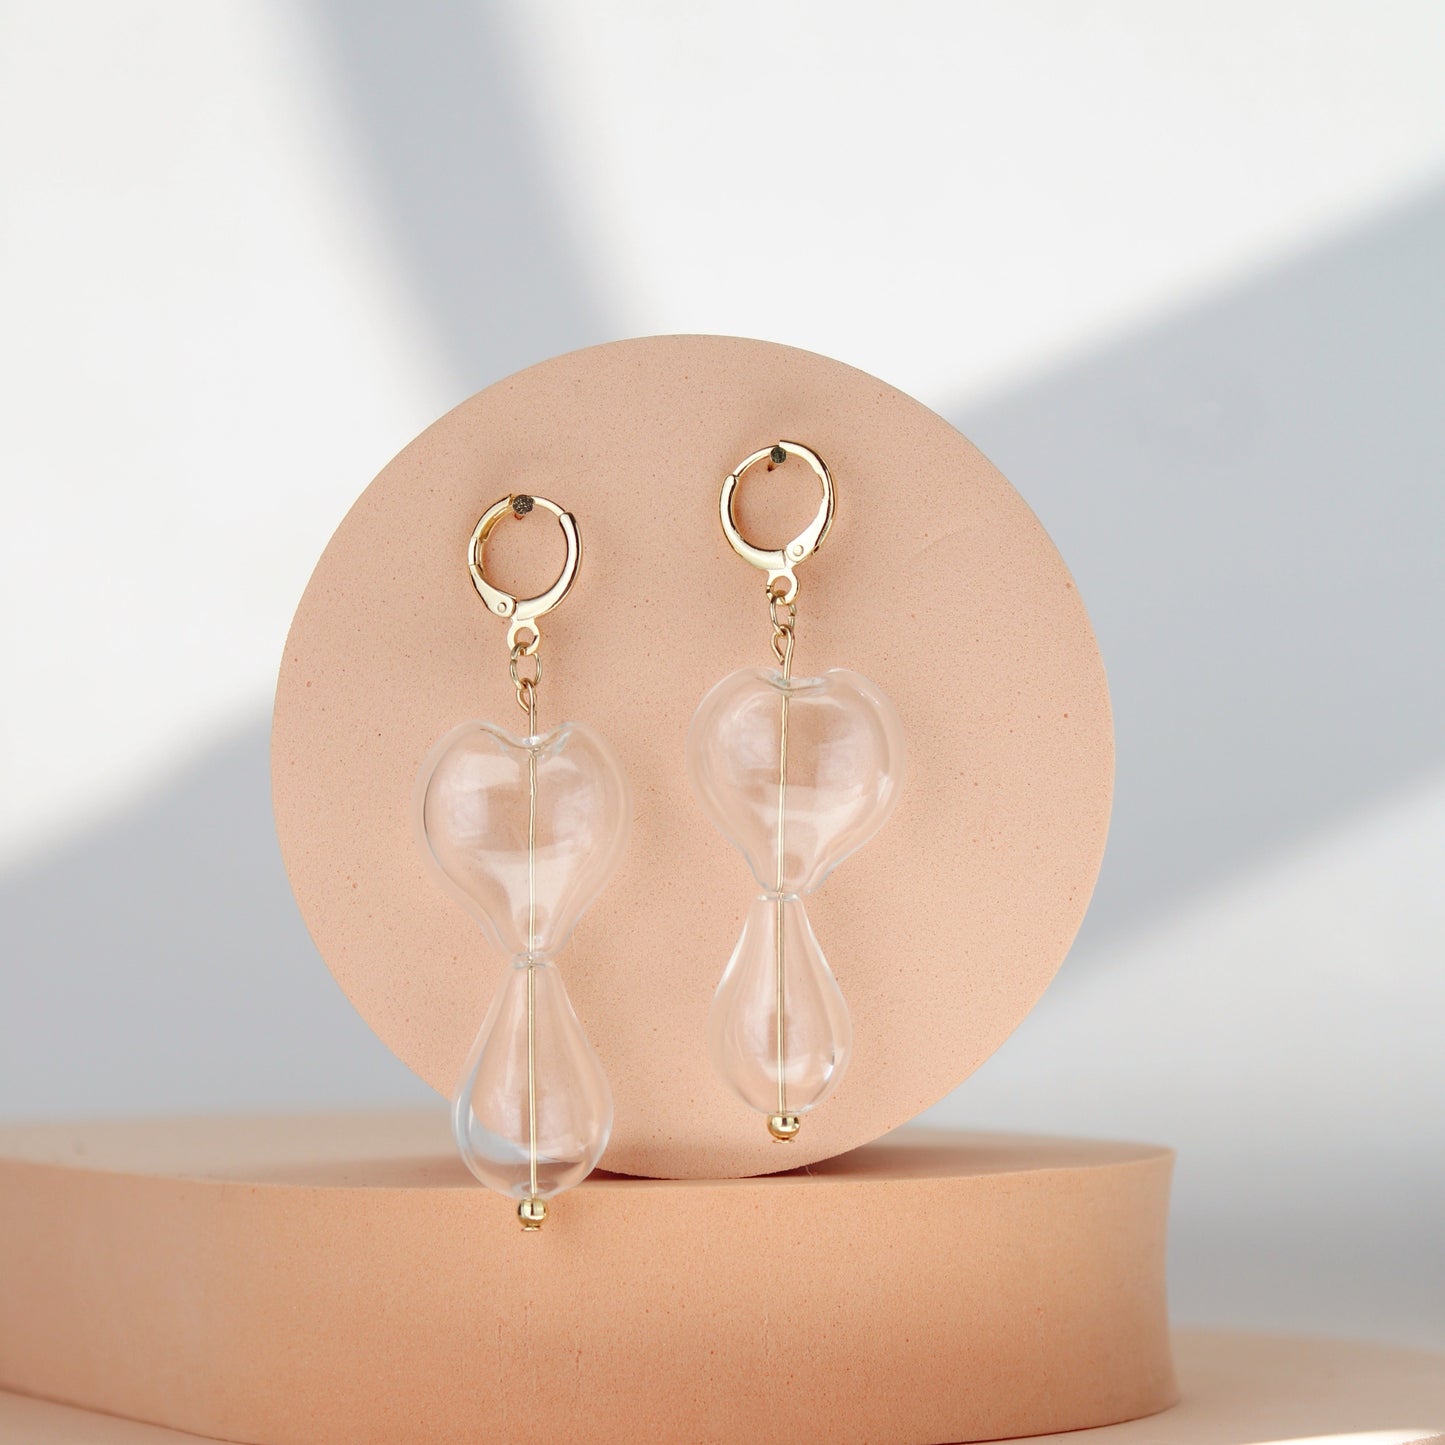 Daphne clear lampwork glass earrings designed by Summer Nikole Jewelry in Greenville, SC